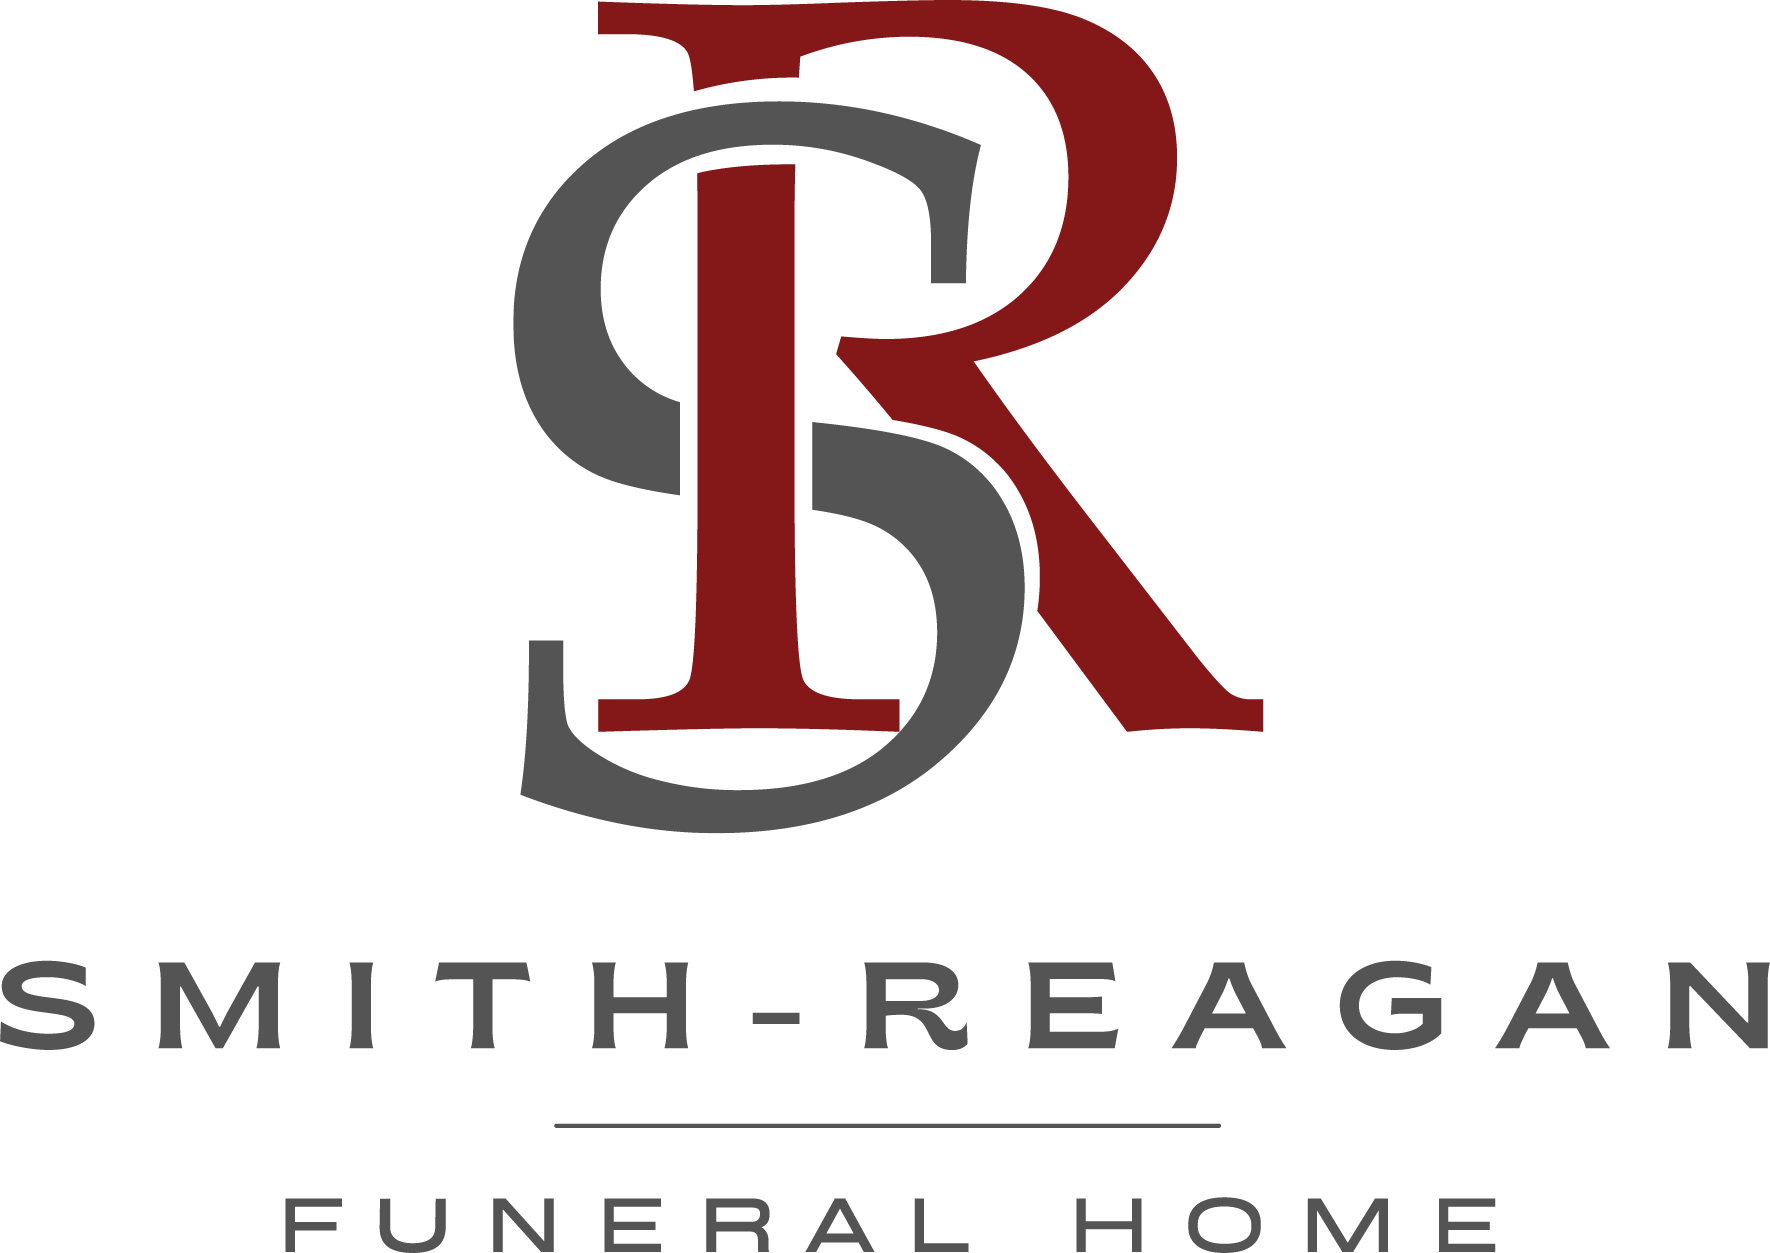 Smith-Reagon Funeral Home Logo